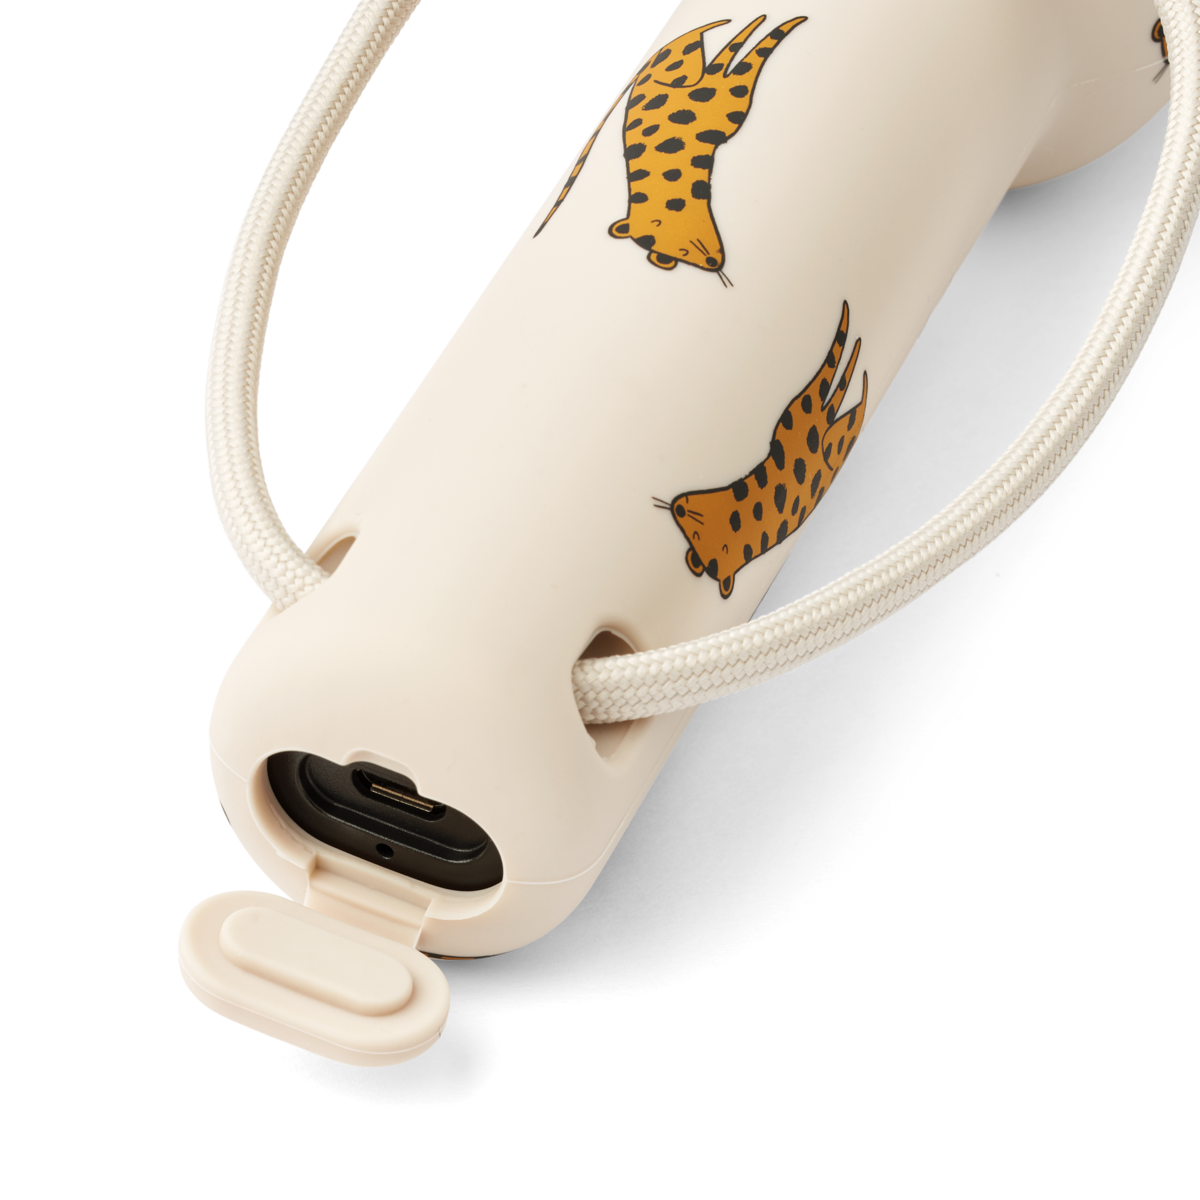 Taschenlampe Gry 'Leopard/Sandy'